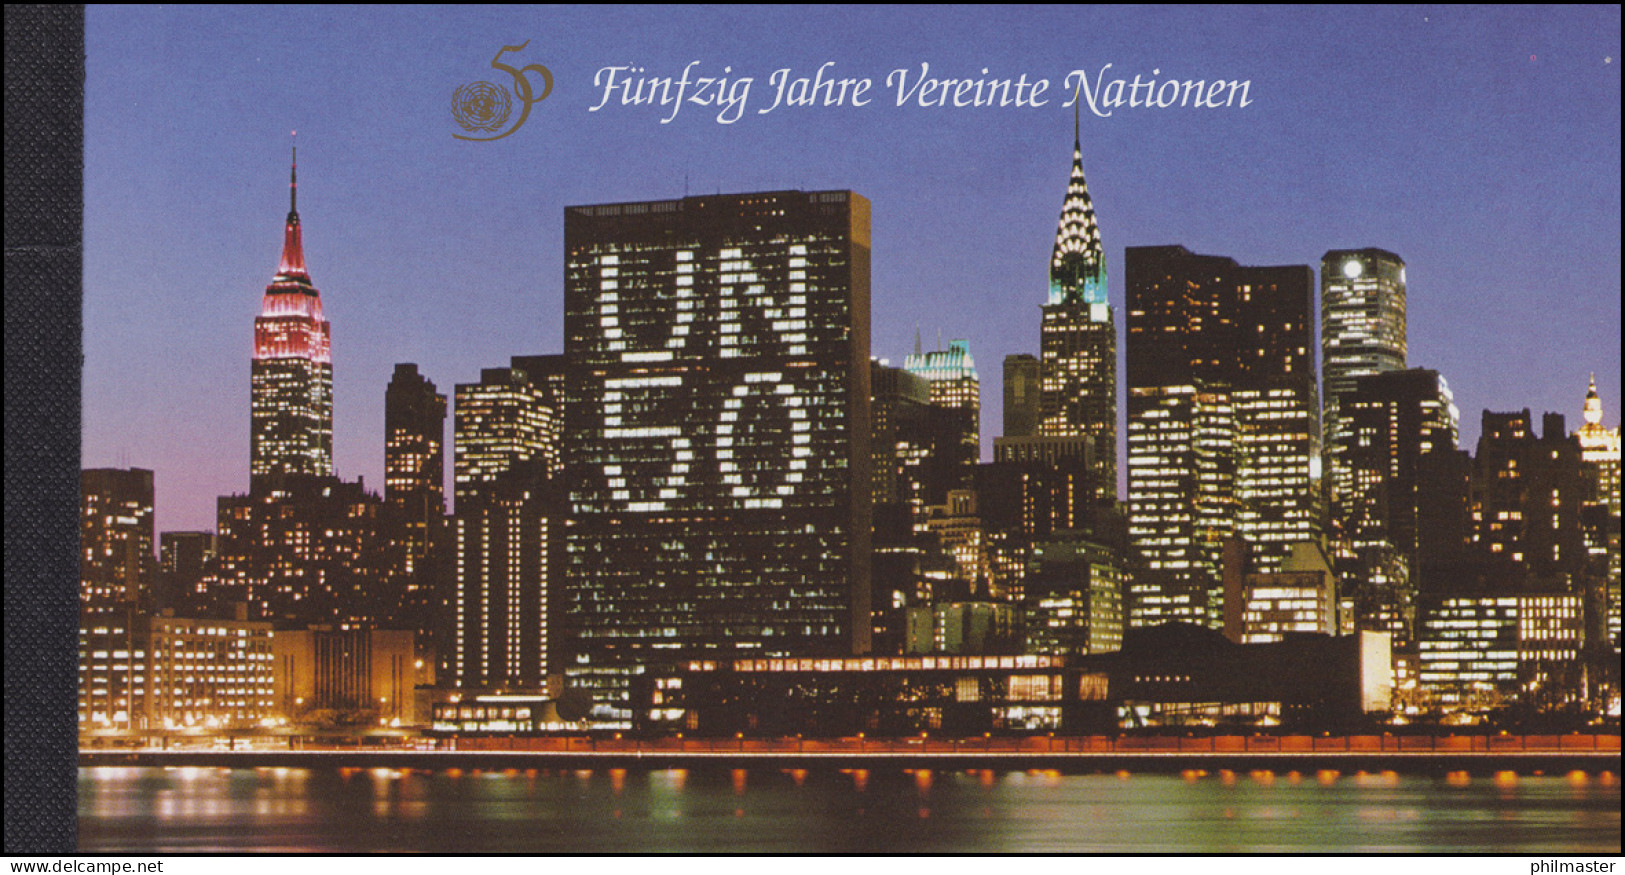 UNO Wien: Markenheftchen 1 Fünfzig Jahre Vereinte Nationen 1995, ** - Carnets